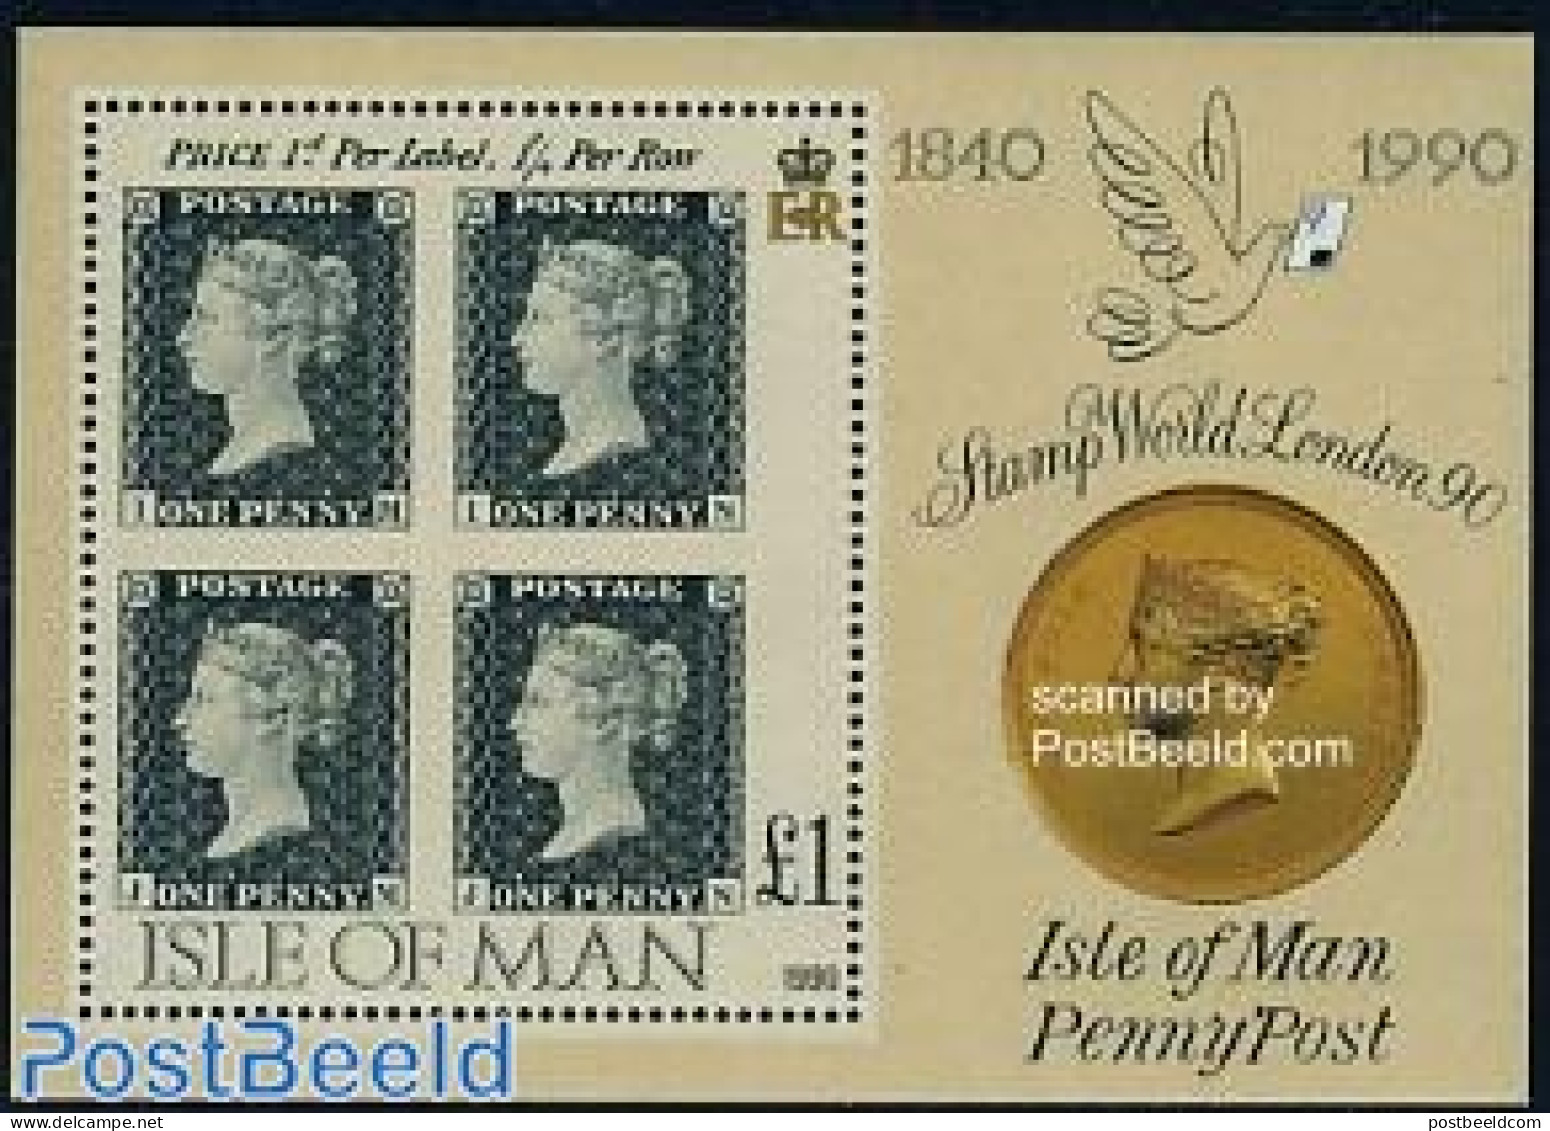 Isle Of Man 1990 150 Years Stamps S/s, Mint NH, Stamps On Stamps - Briefmarken Auf Briefmarken